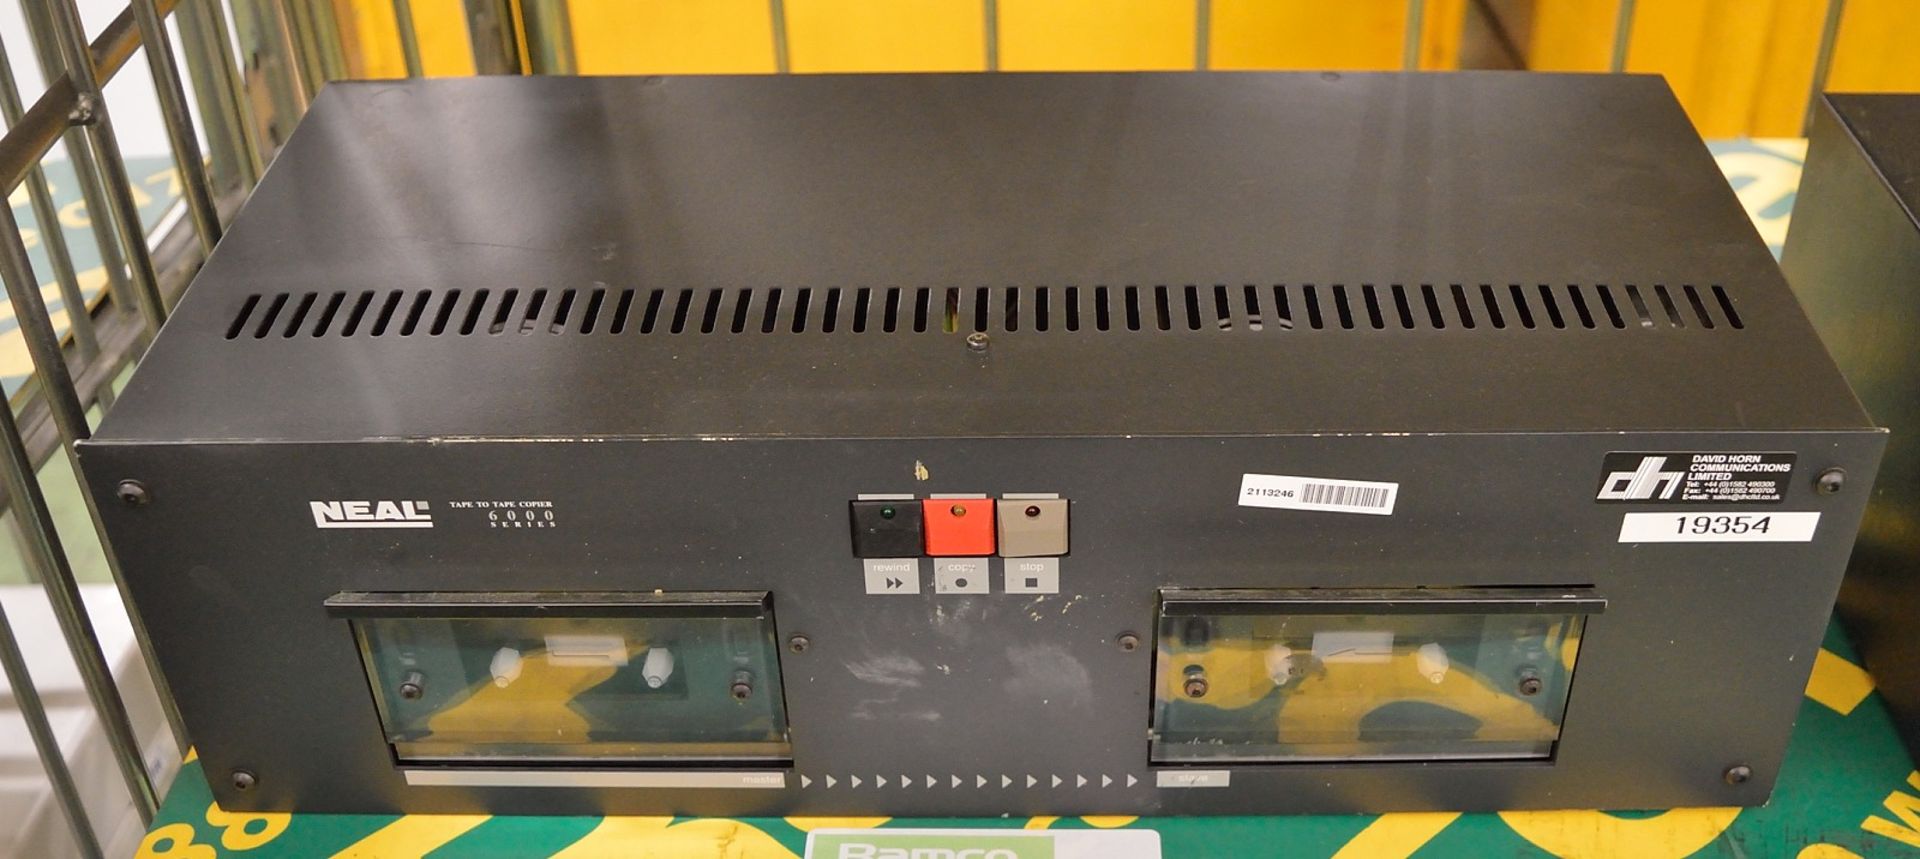 Neal Tape to Tape Copier Model 6223 230V.